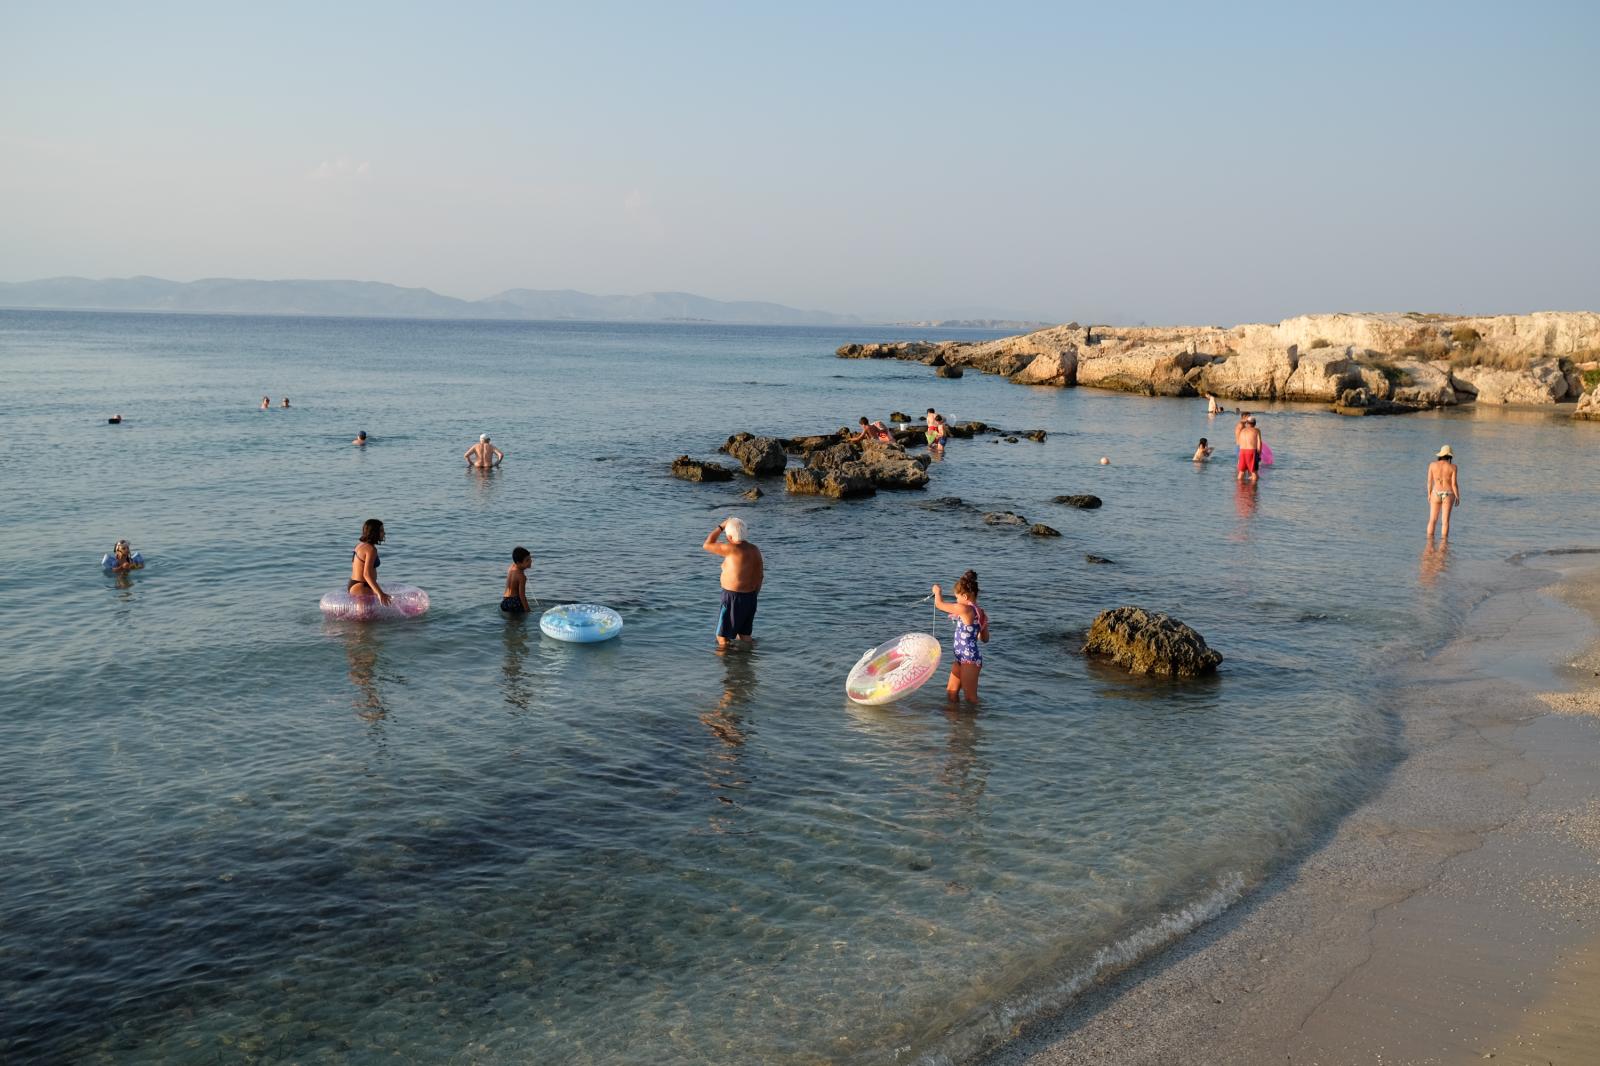 Beach in Aegina | Buy this image